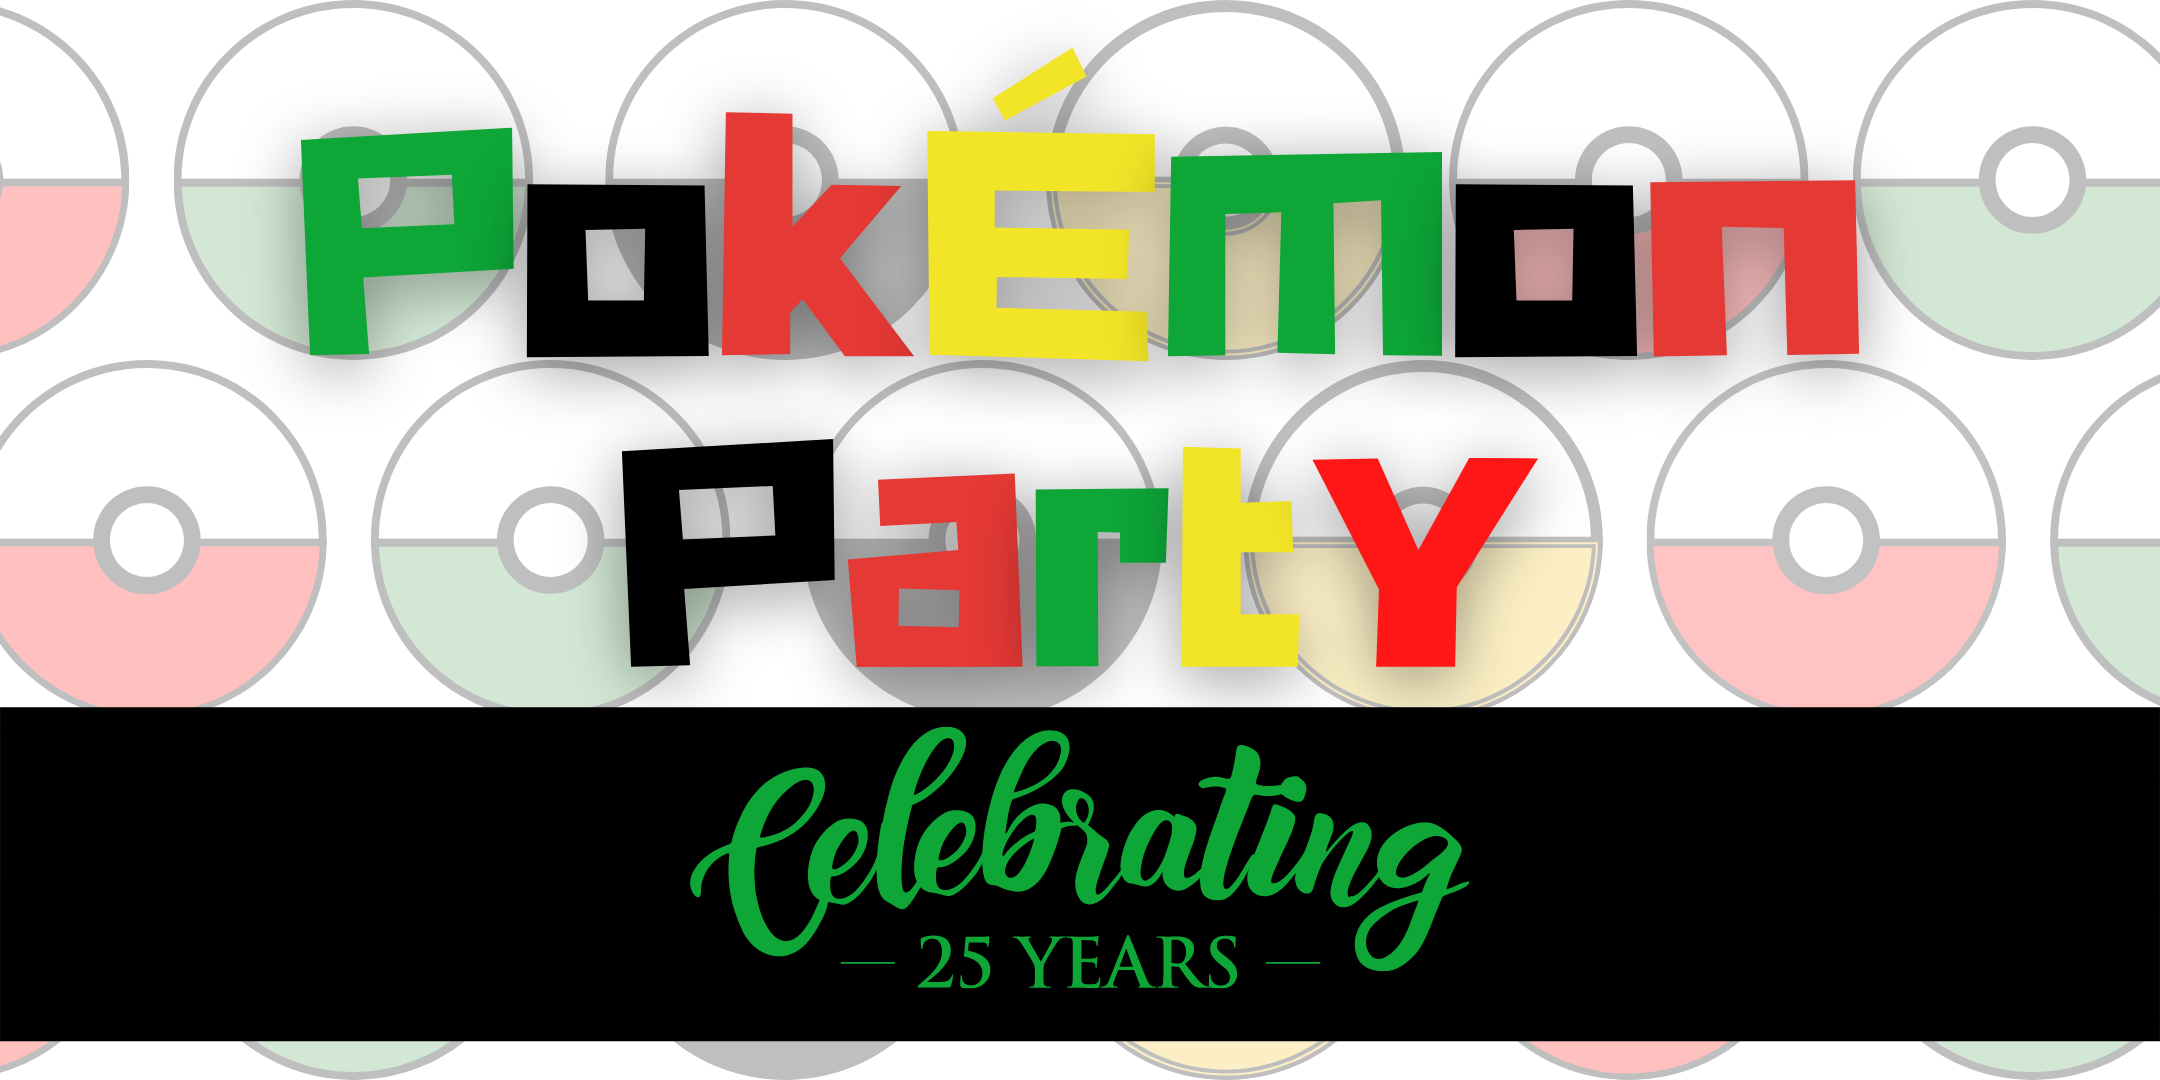 Pokémon Party event image